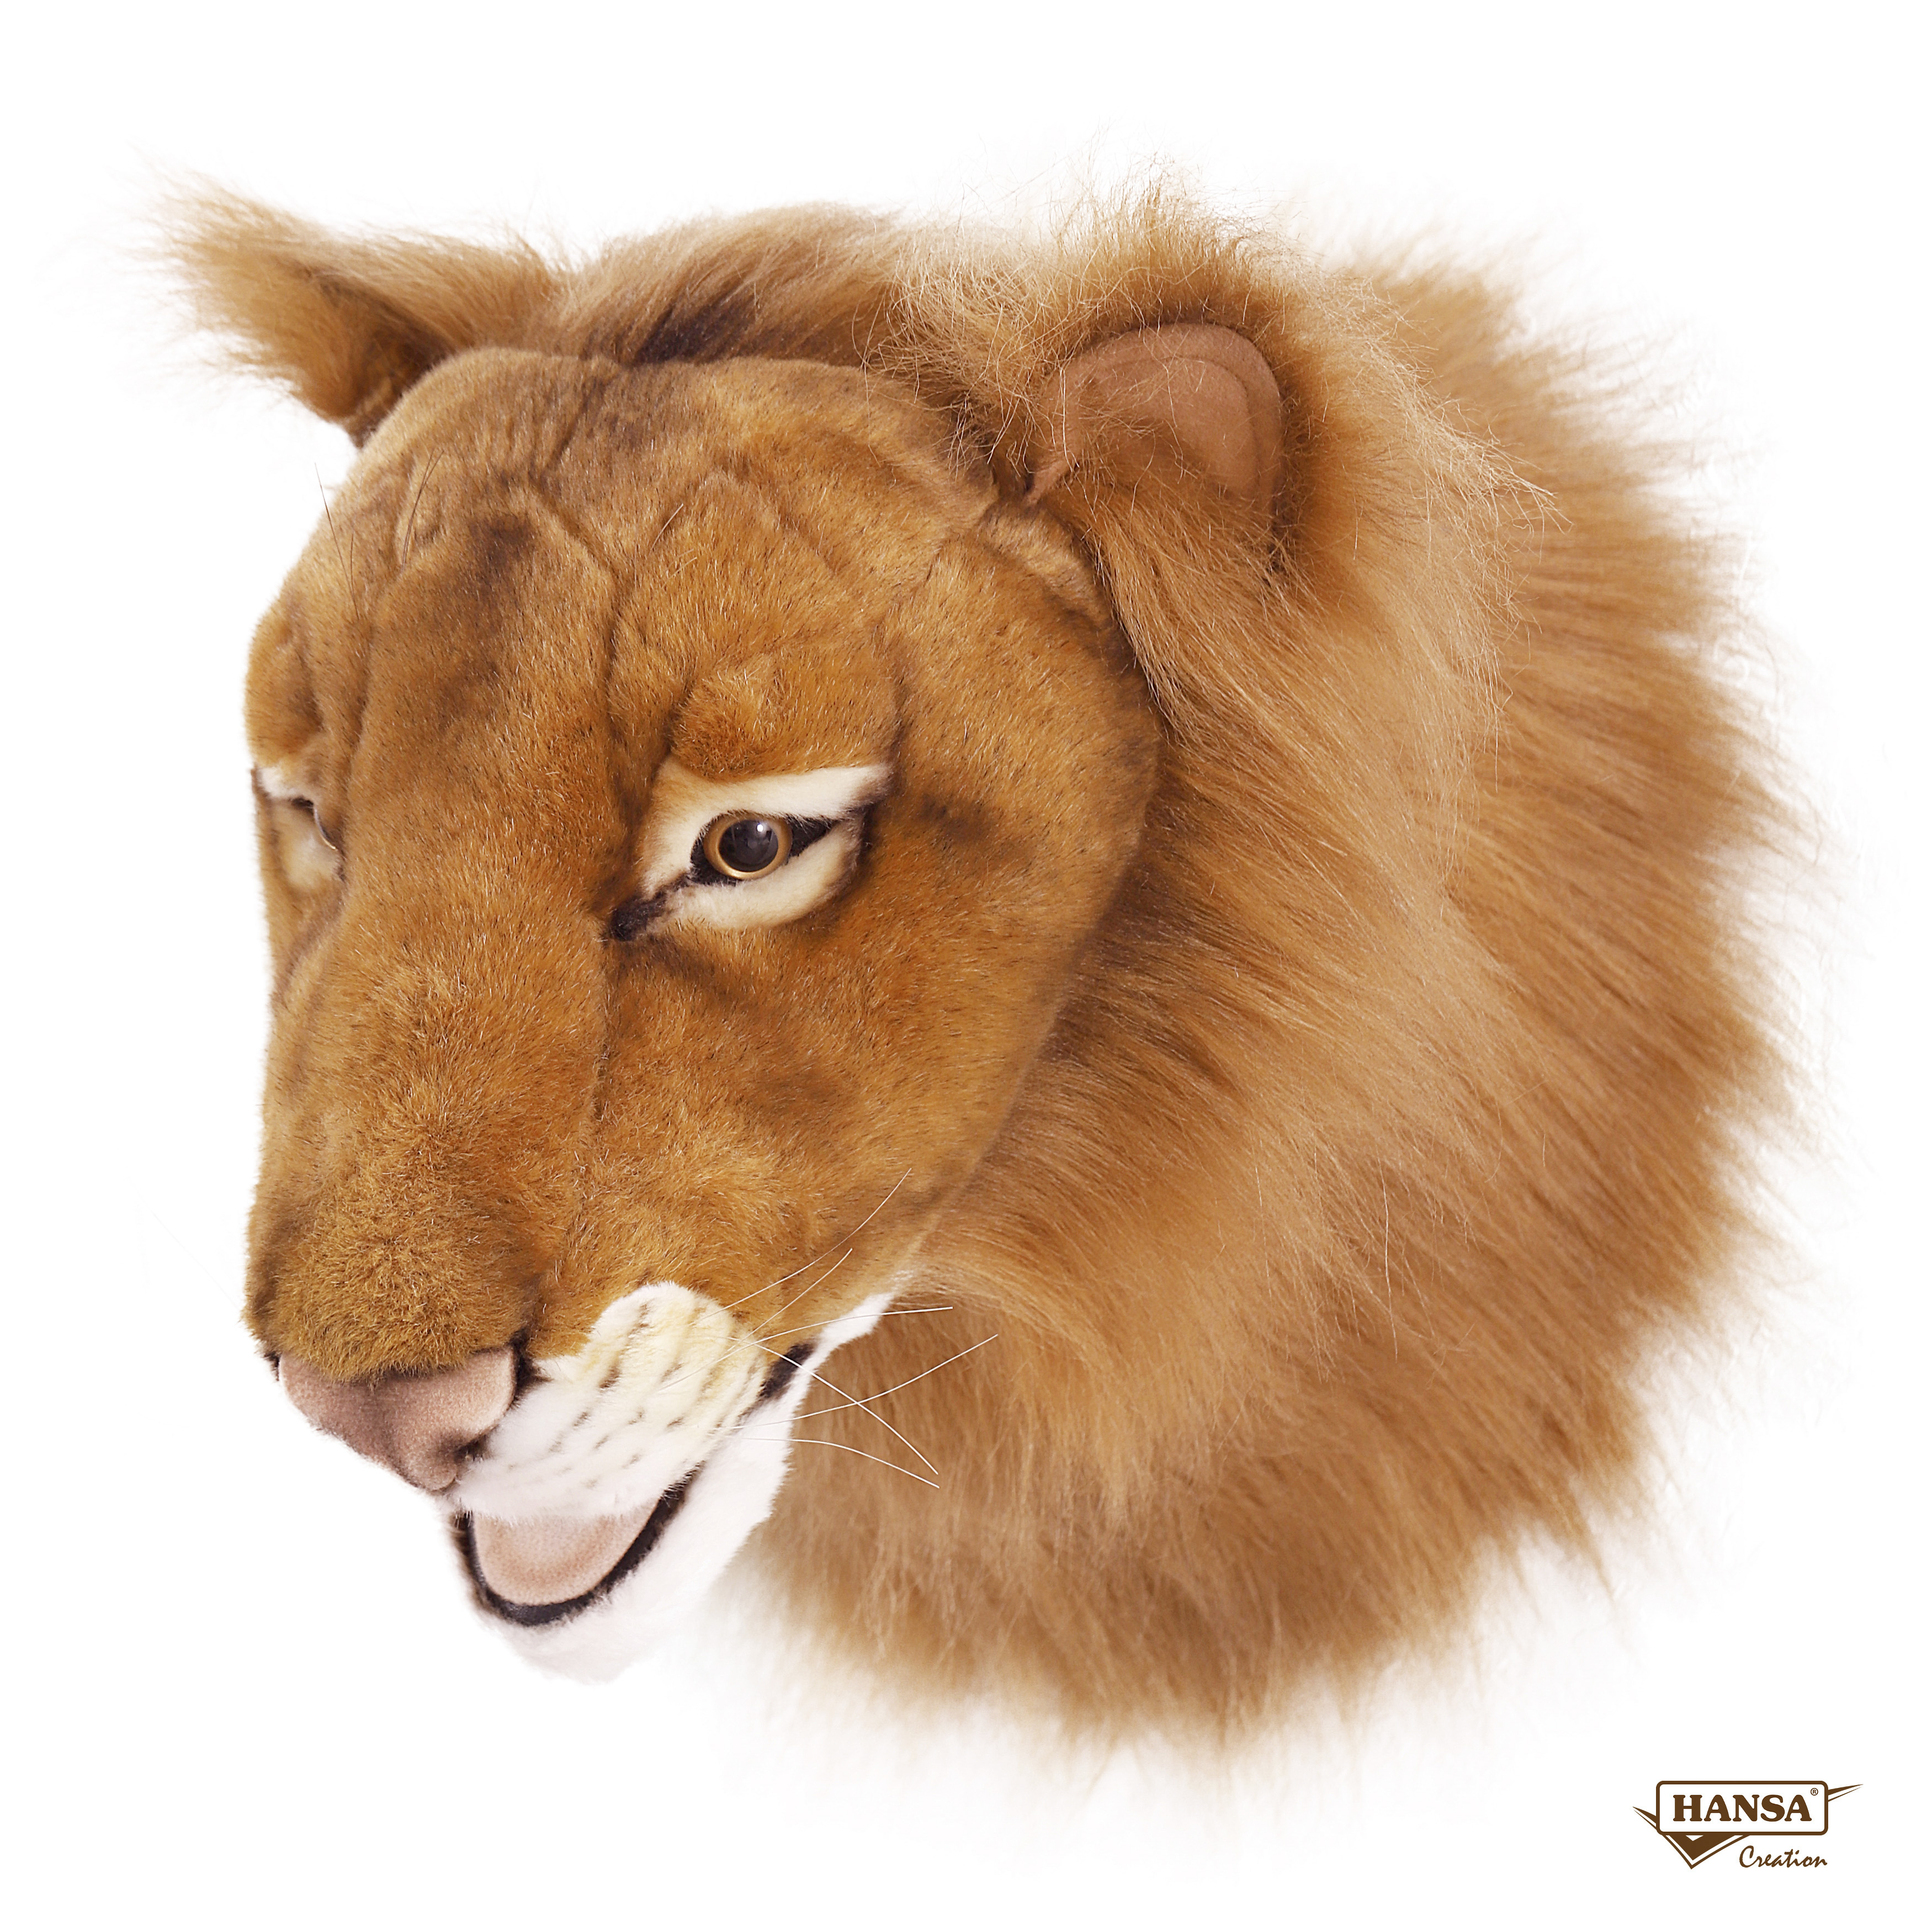 Реалистичная мягкая игрушка Hansa Creation Голова льва, 39 см мягкая игрушка hansa персидский кот табби 45 см